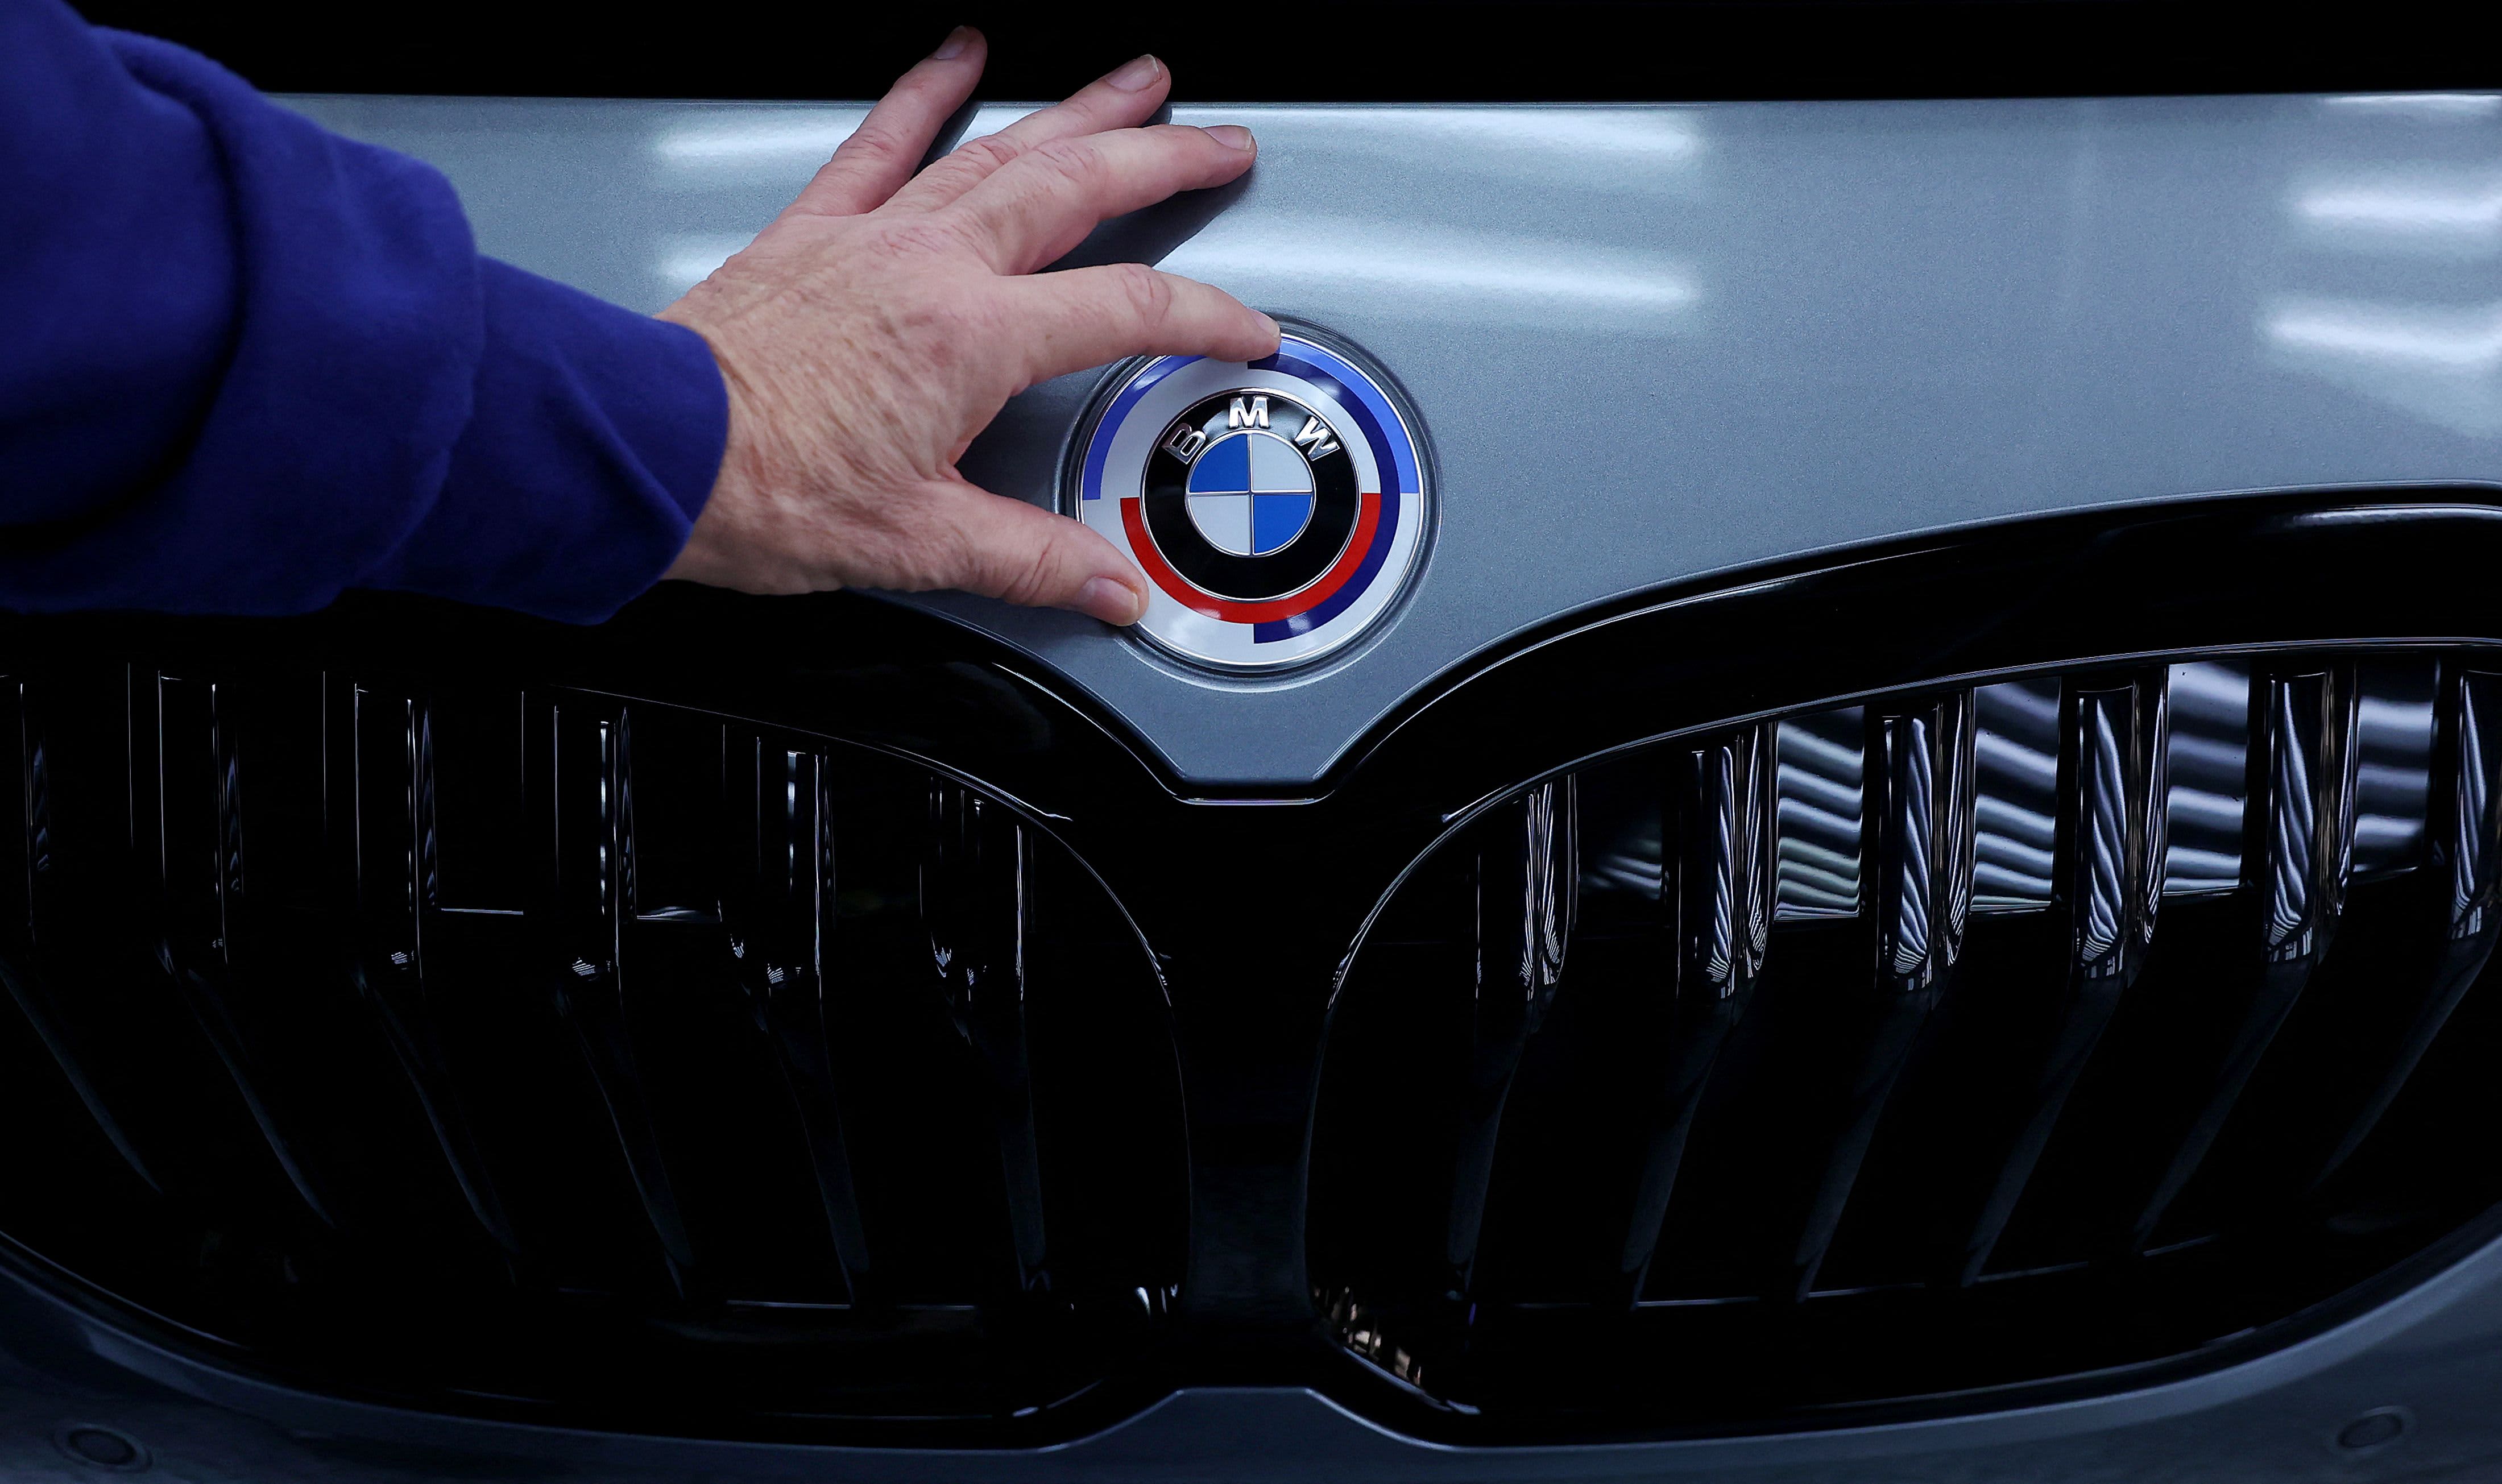 Niemiecki producent samochodów BMW prezentuje nowy samochód elektryczny